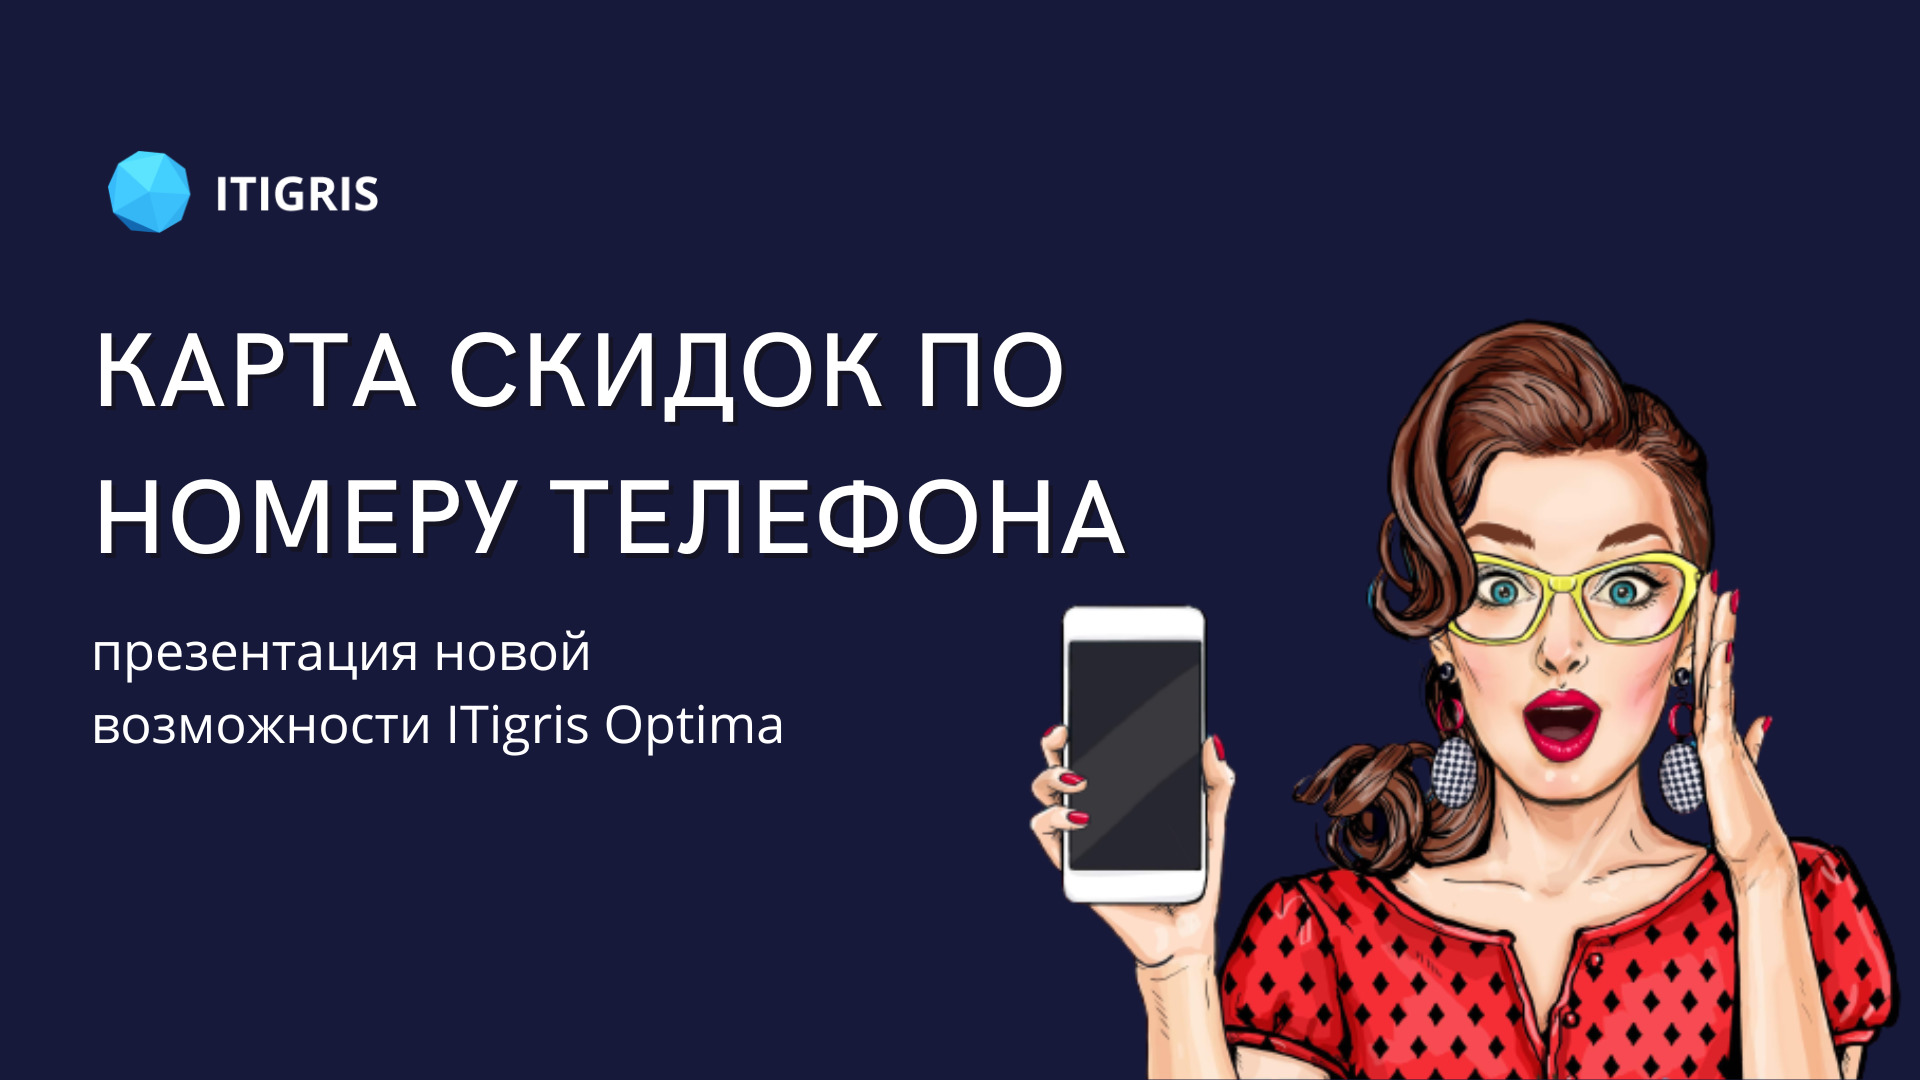 Обновление в ITigris Optima: кaртa скидок по номеру телефонa клиентa